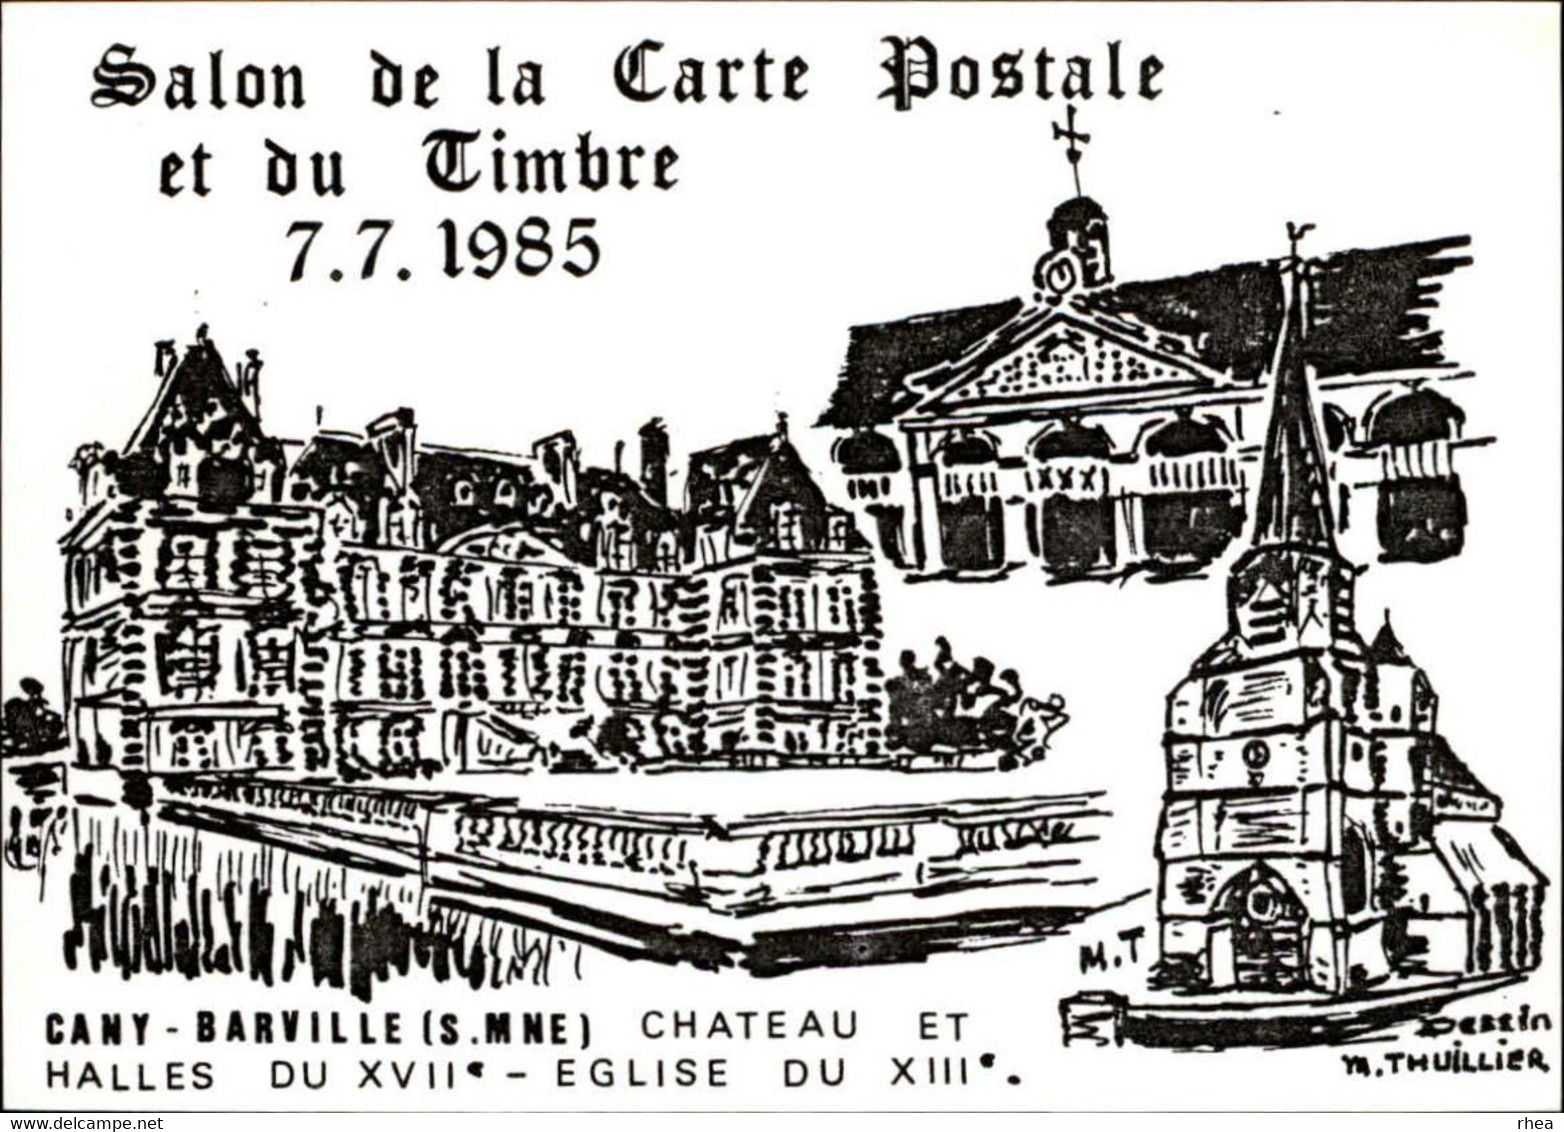 SALONS DE COLLECTIONS - Salon De Cartes Postales Et Du Timbre - 76 CANY BARVILLE - 1985 - Dessin De Thuillier - Bourses & Salons De Collections